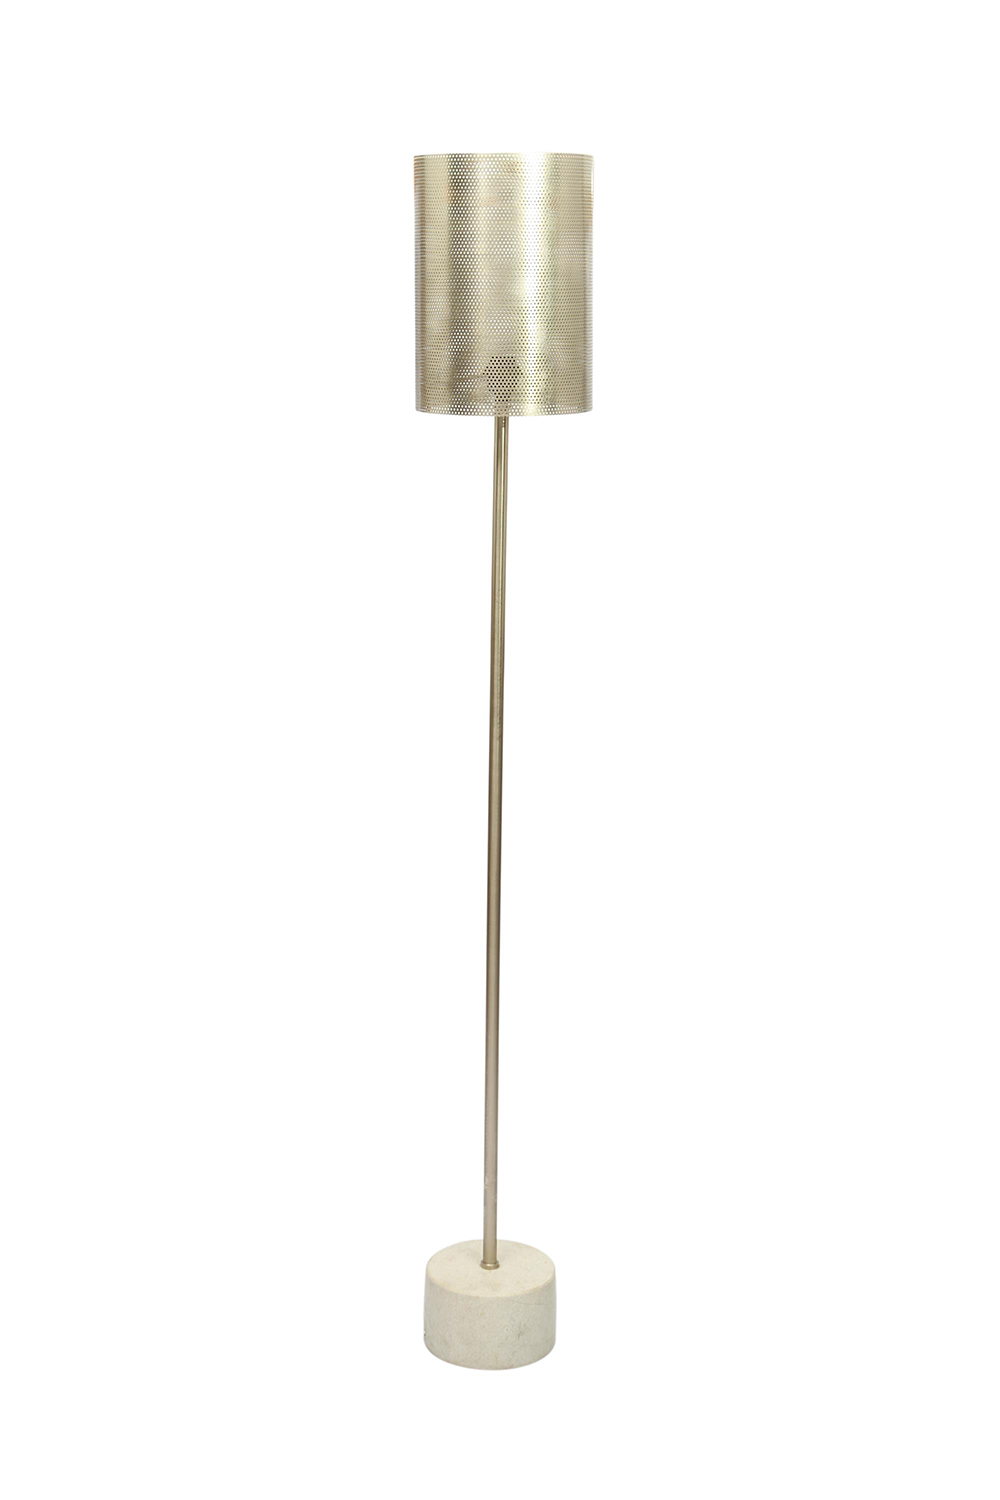 Ren-Wil Posture Floor Lamp - Copper Plated